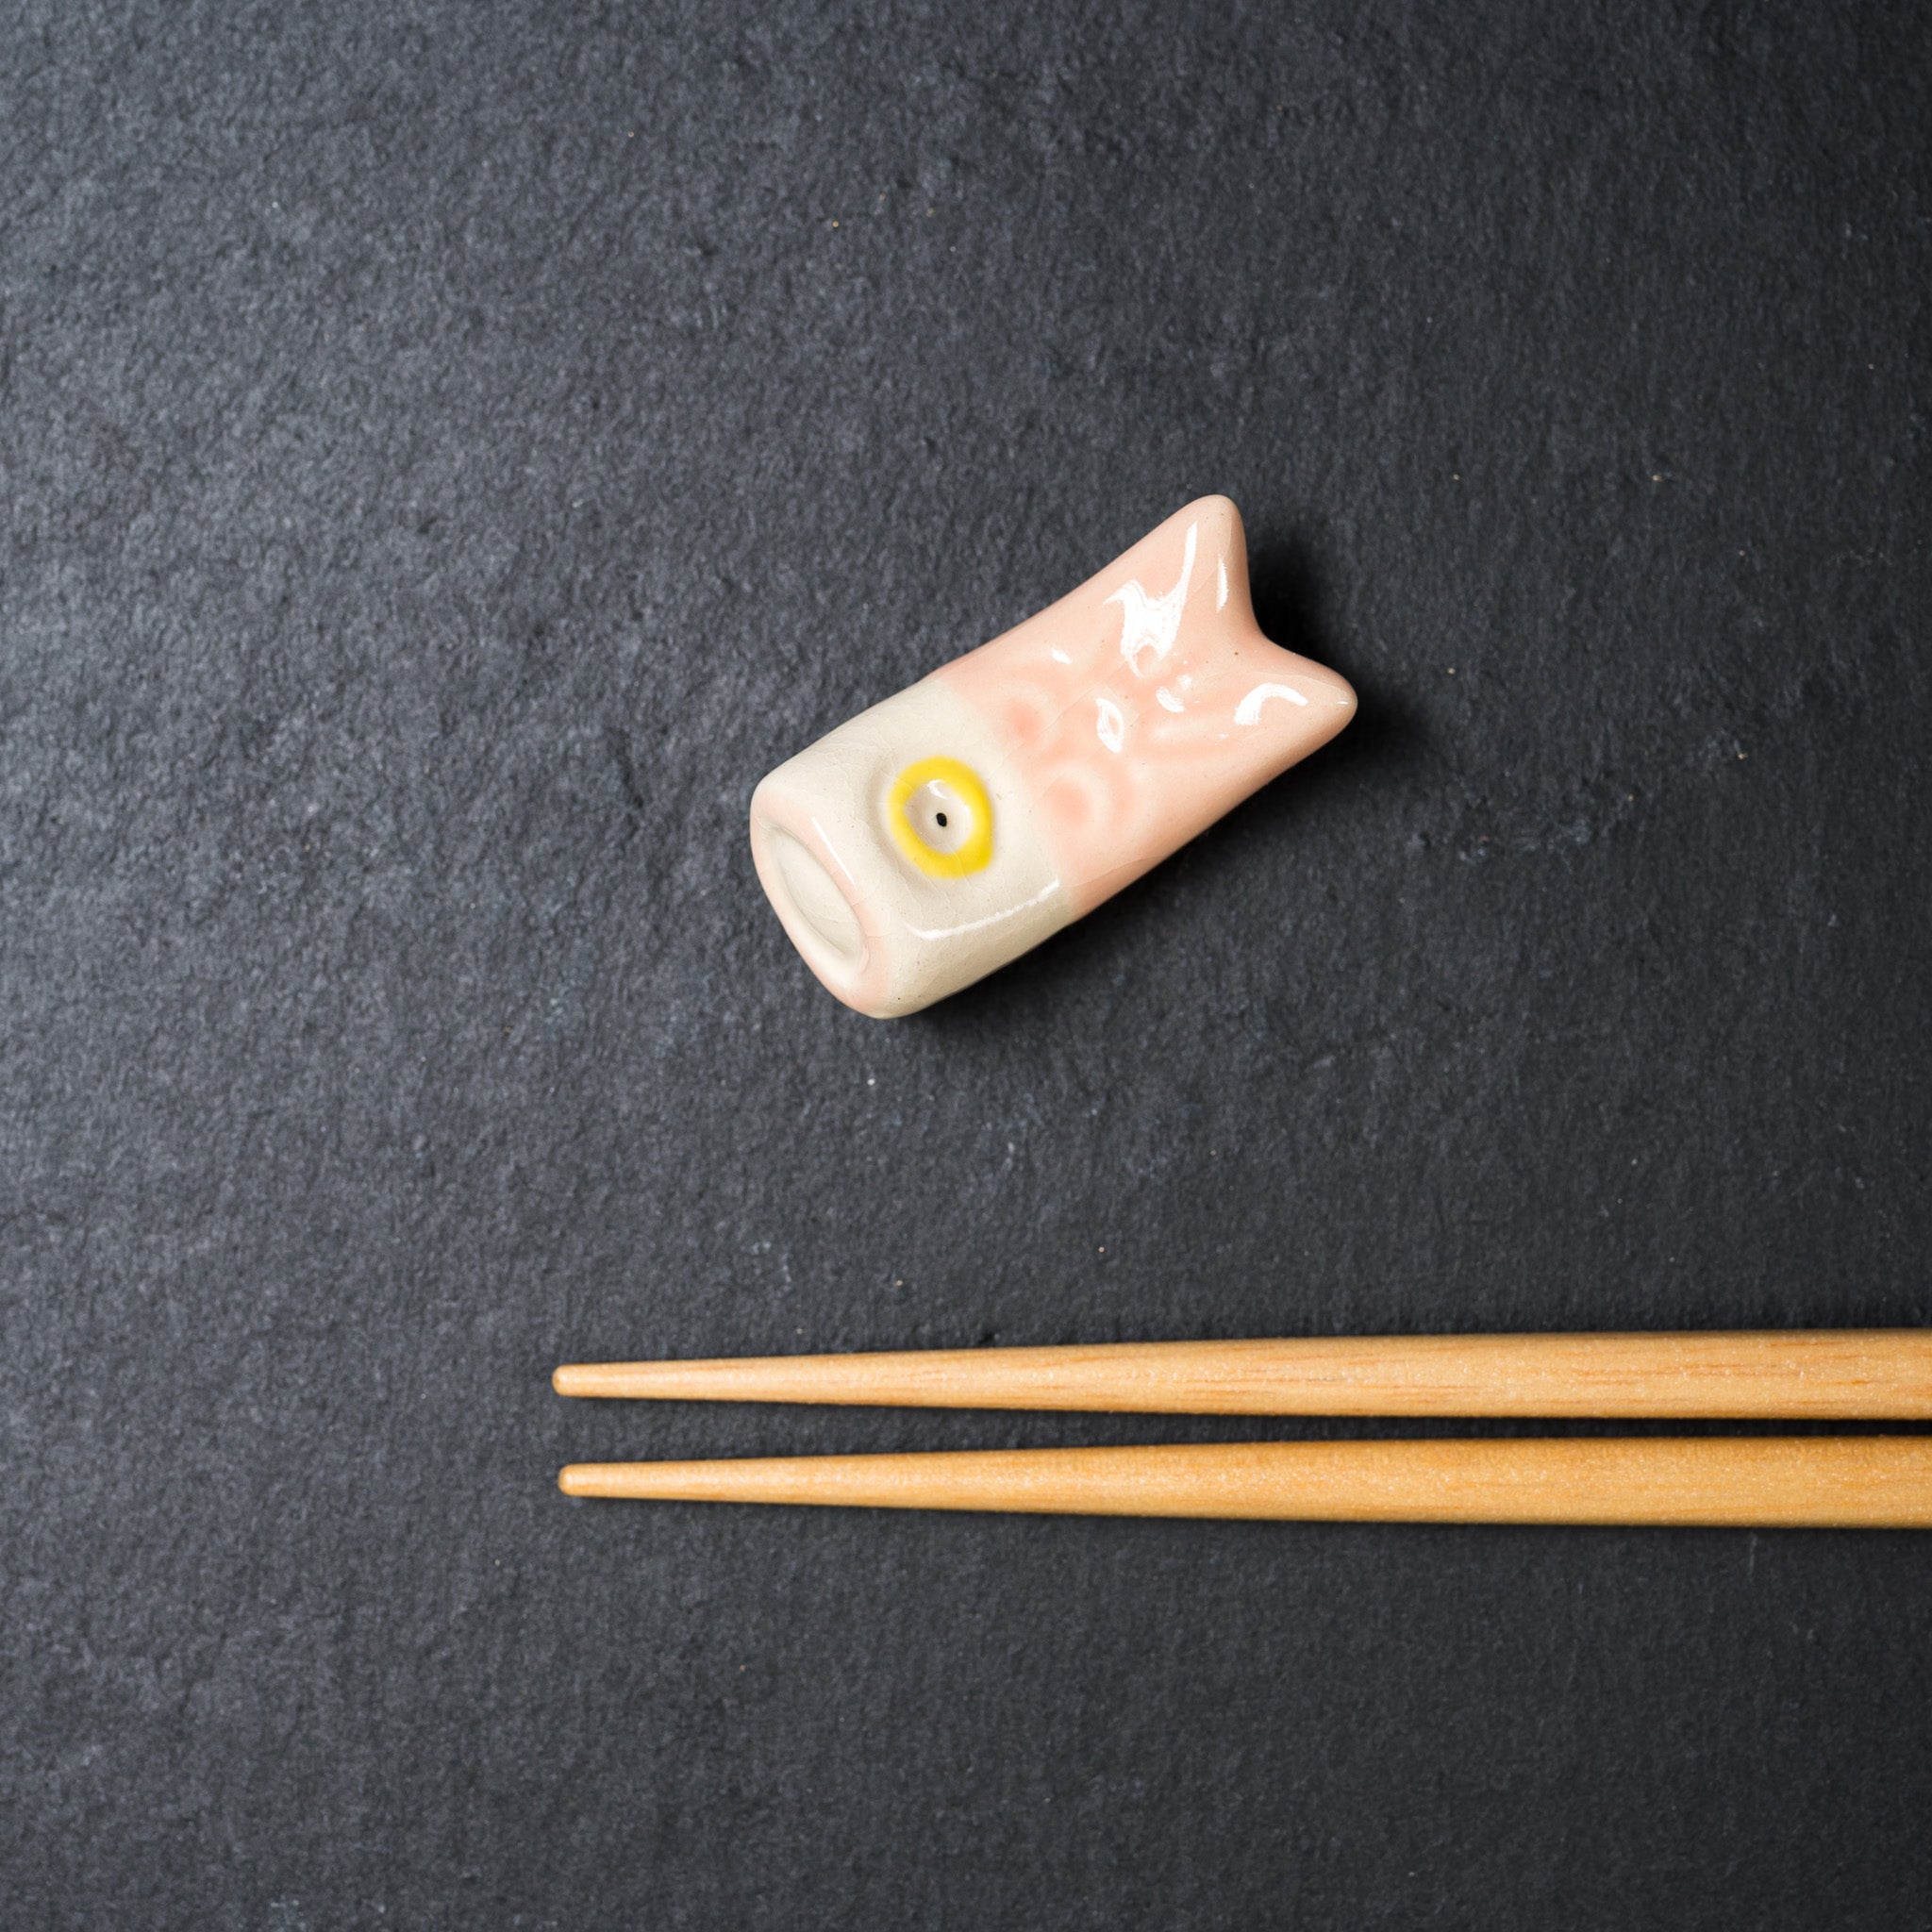 Carp Streamer Hand Made Chopstick Rest - 5 Options